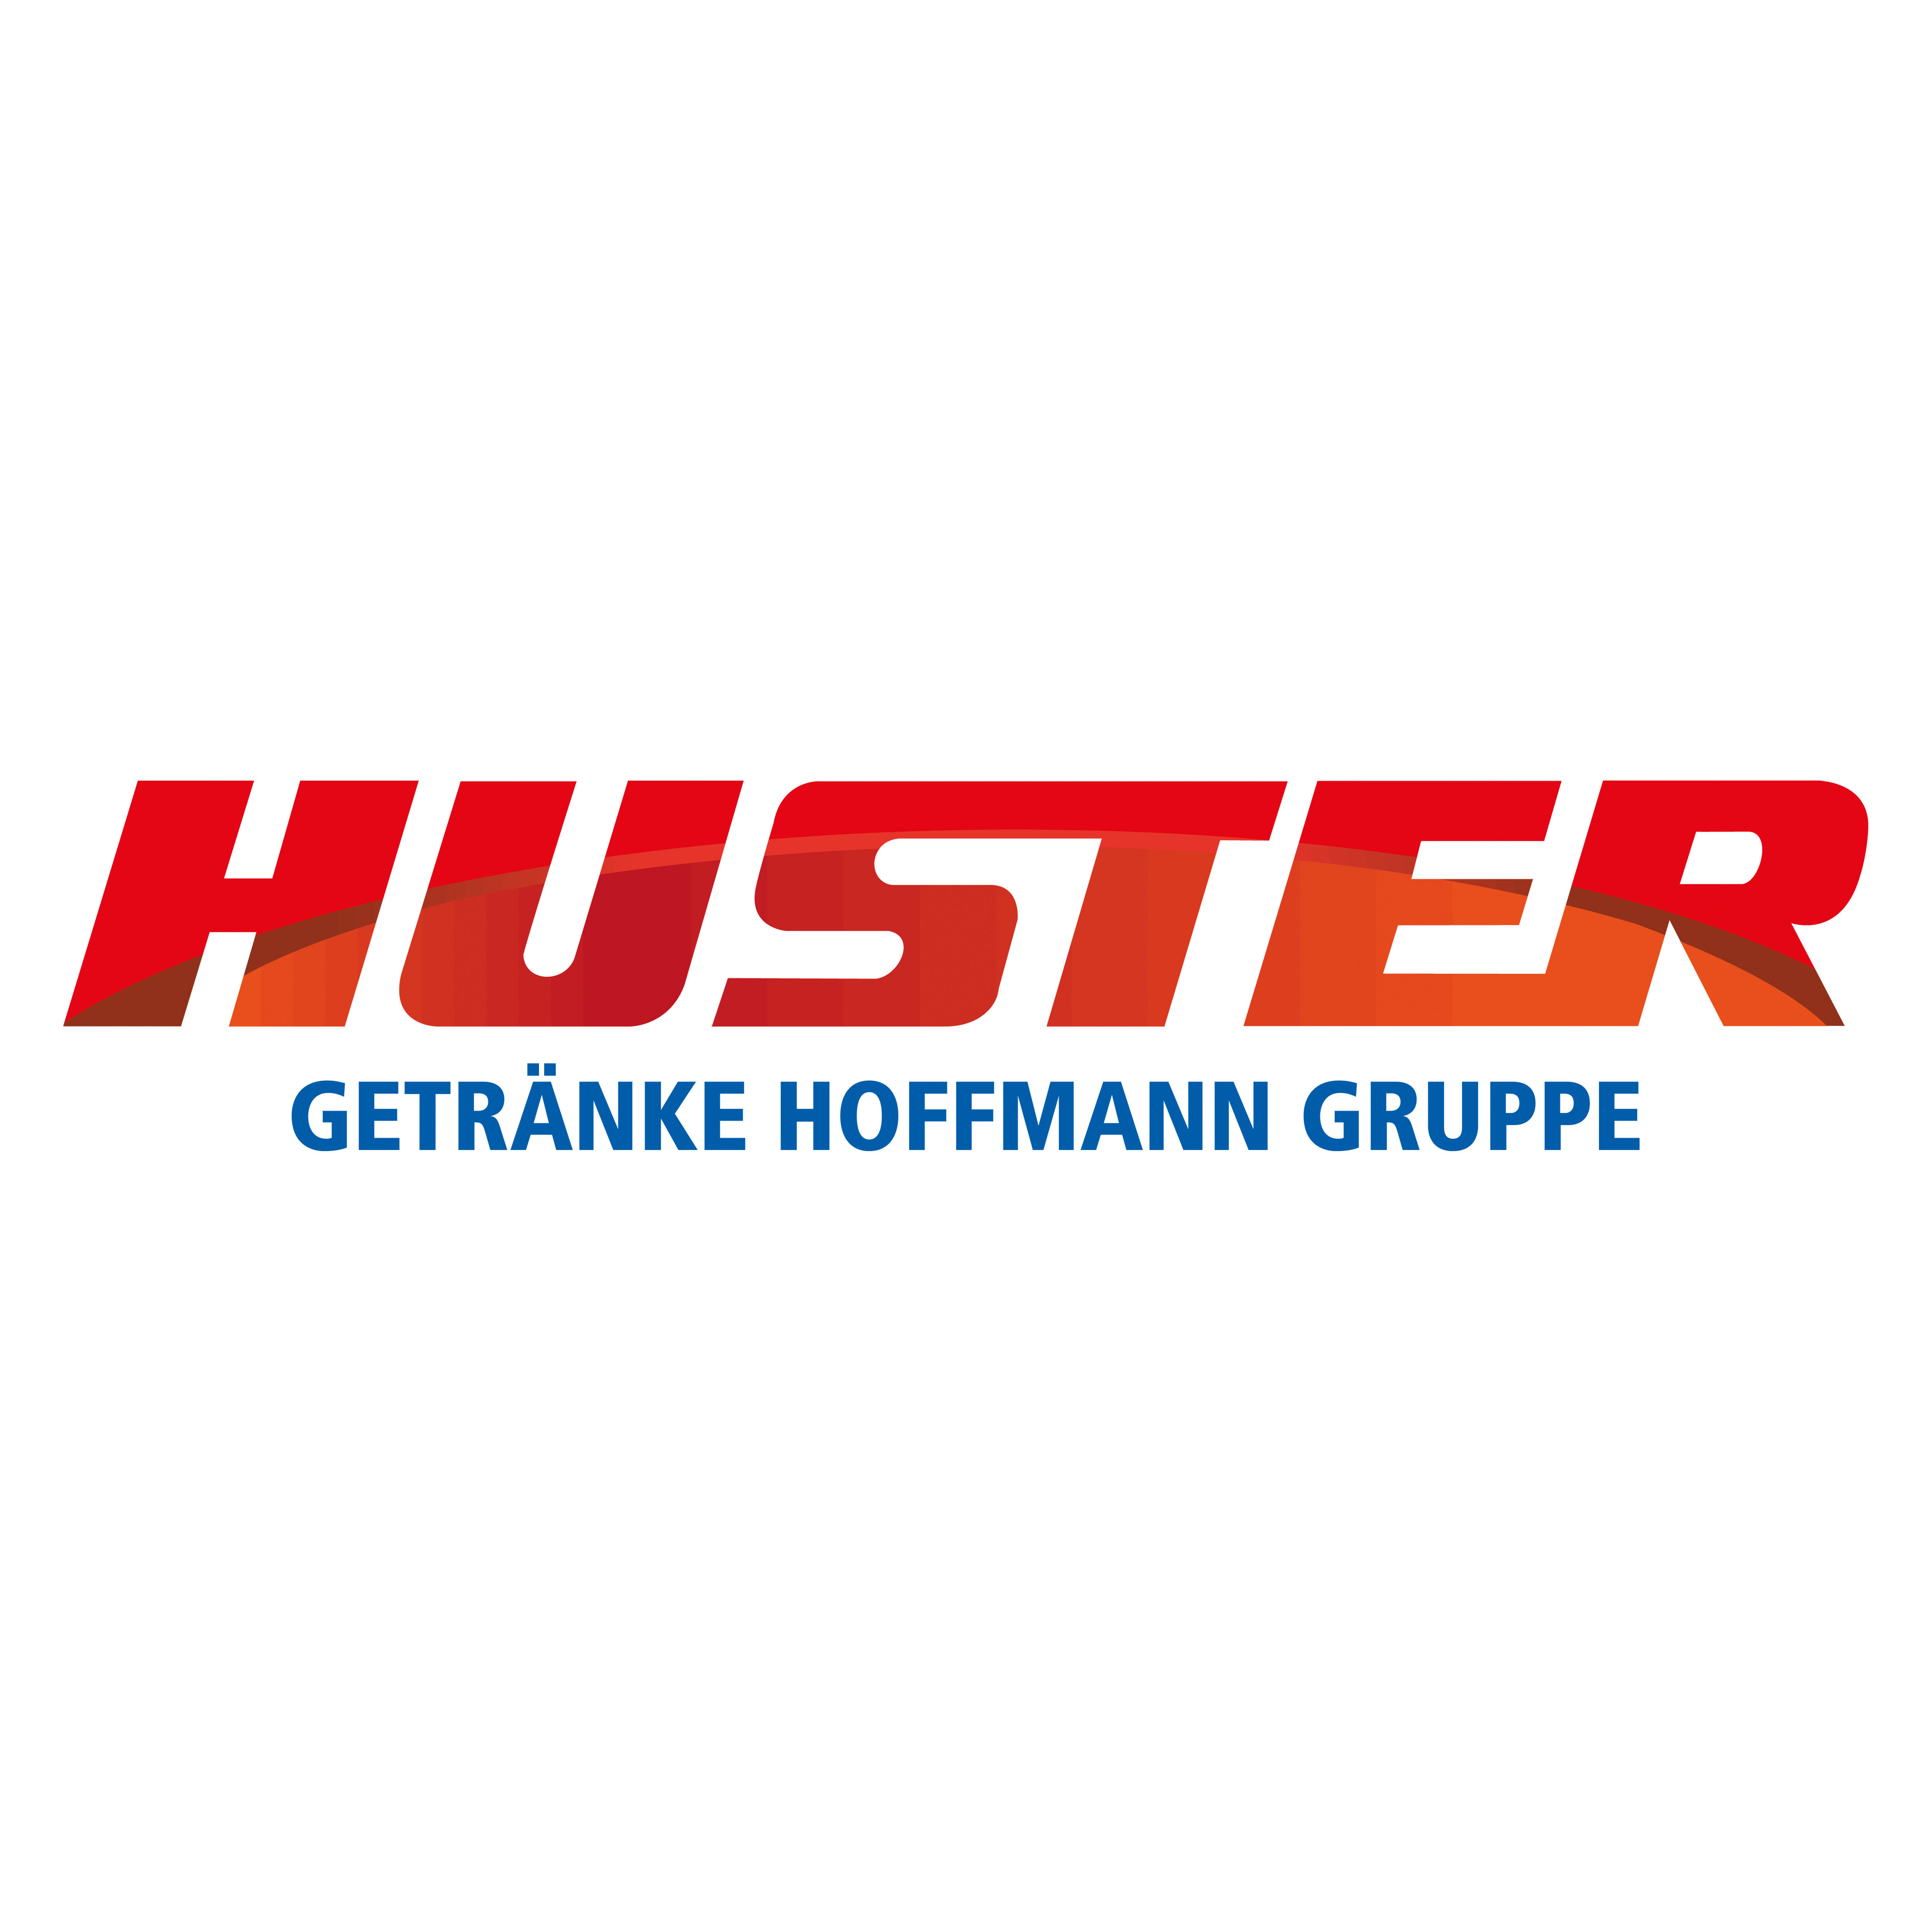 Huster Getränke Hoffmann Gruppe in Dresden - Logo